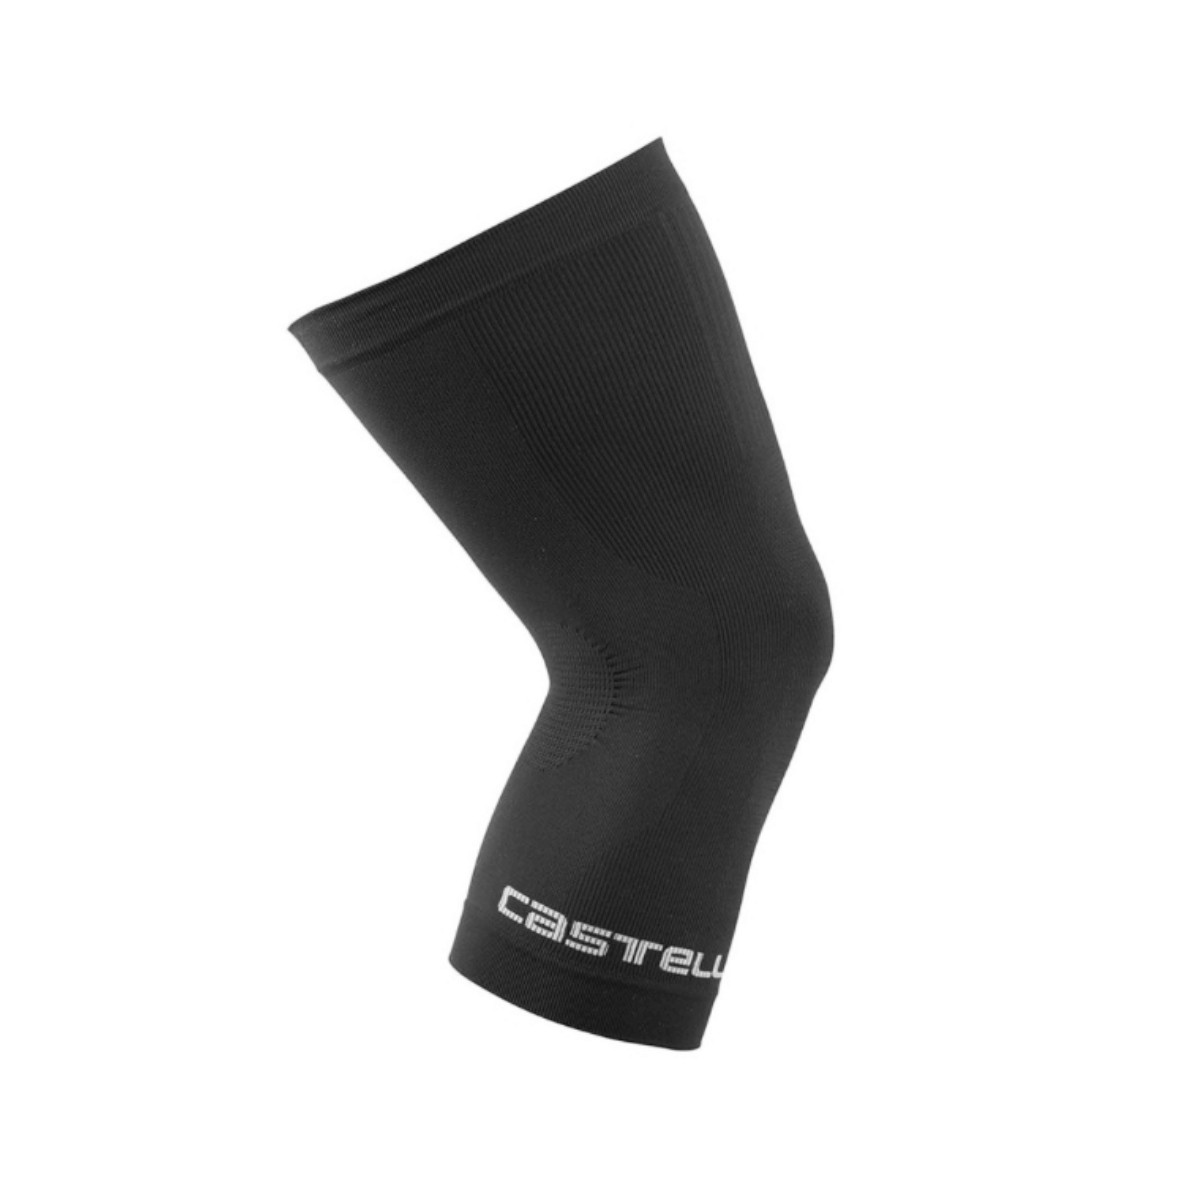 Castelli Pro Seamless Black Knee Brace, Size L/XL